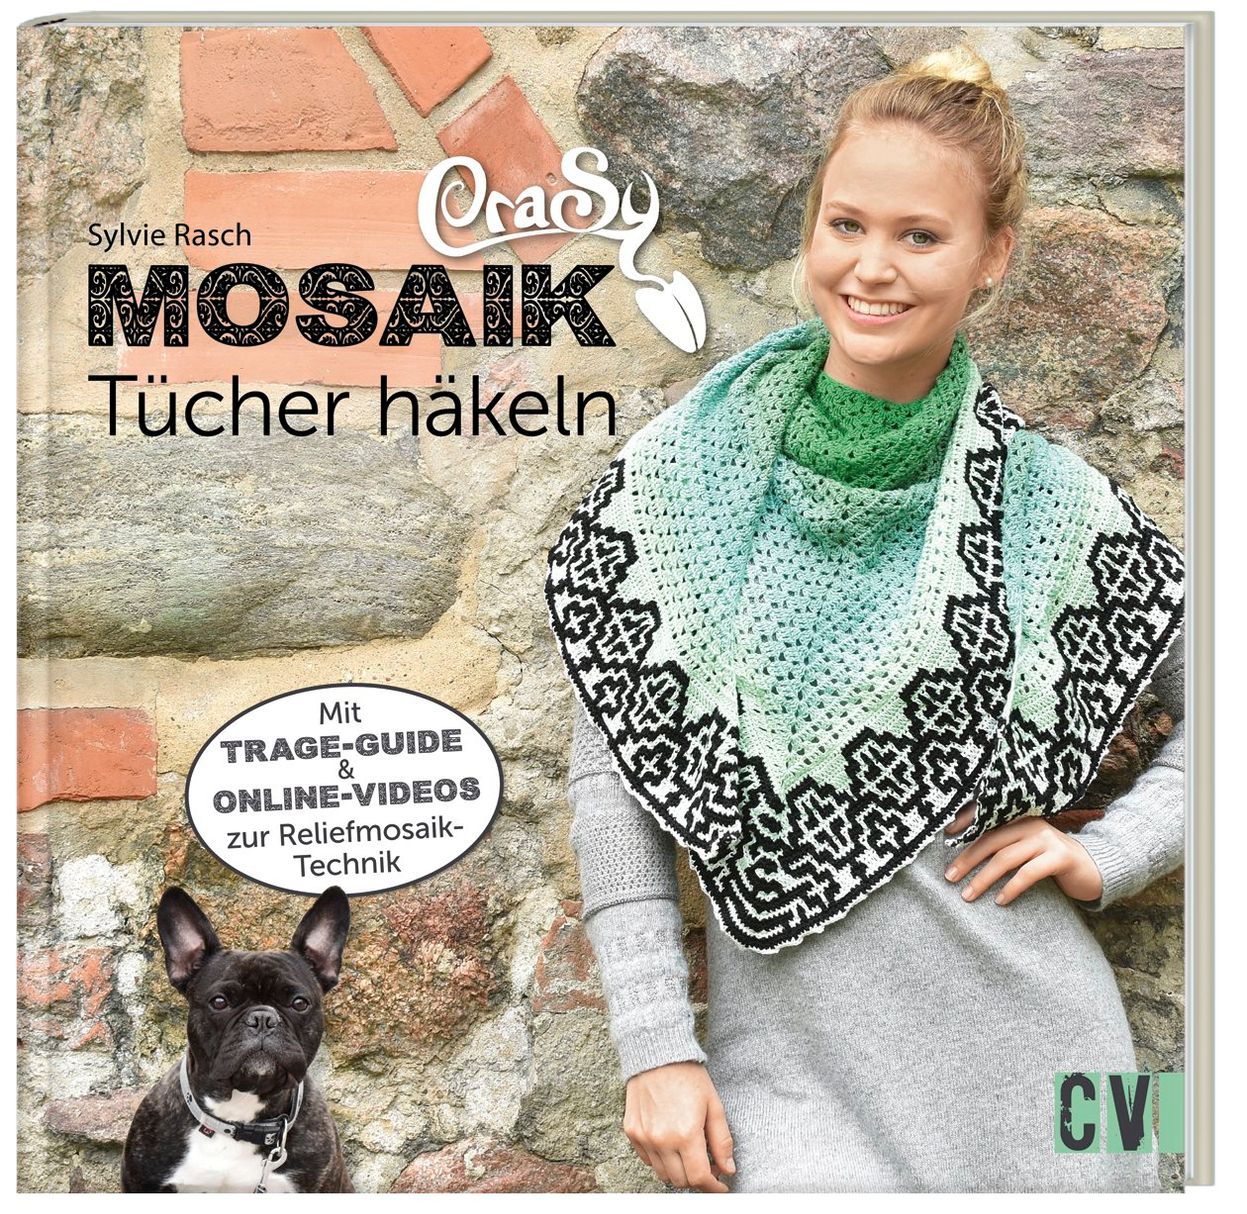 CraSy Mosaik - Tücher häkeln Buch versandkostenfrei bei Weltbild.at